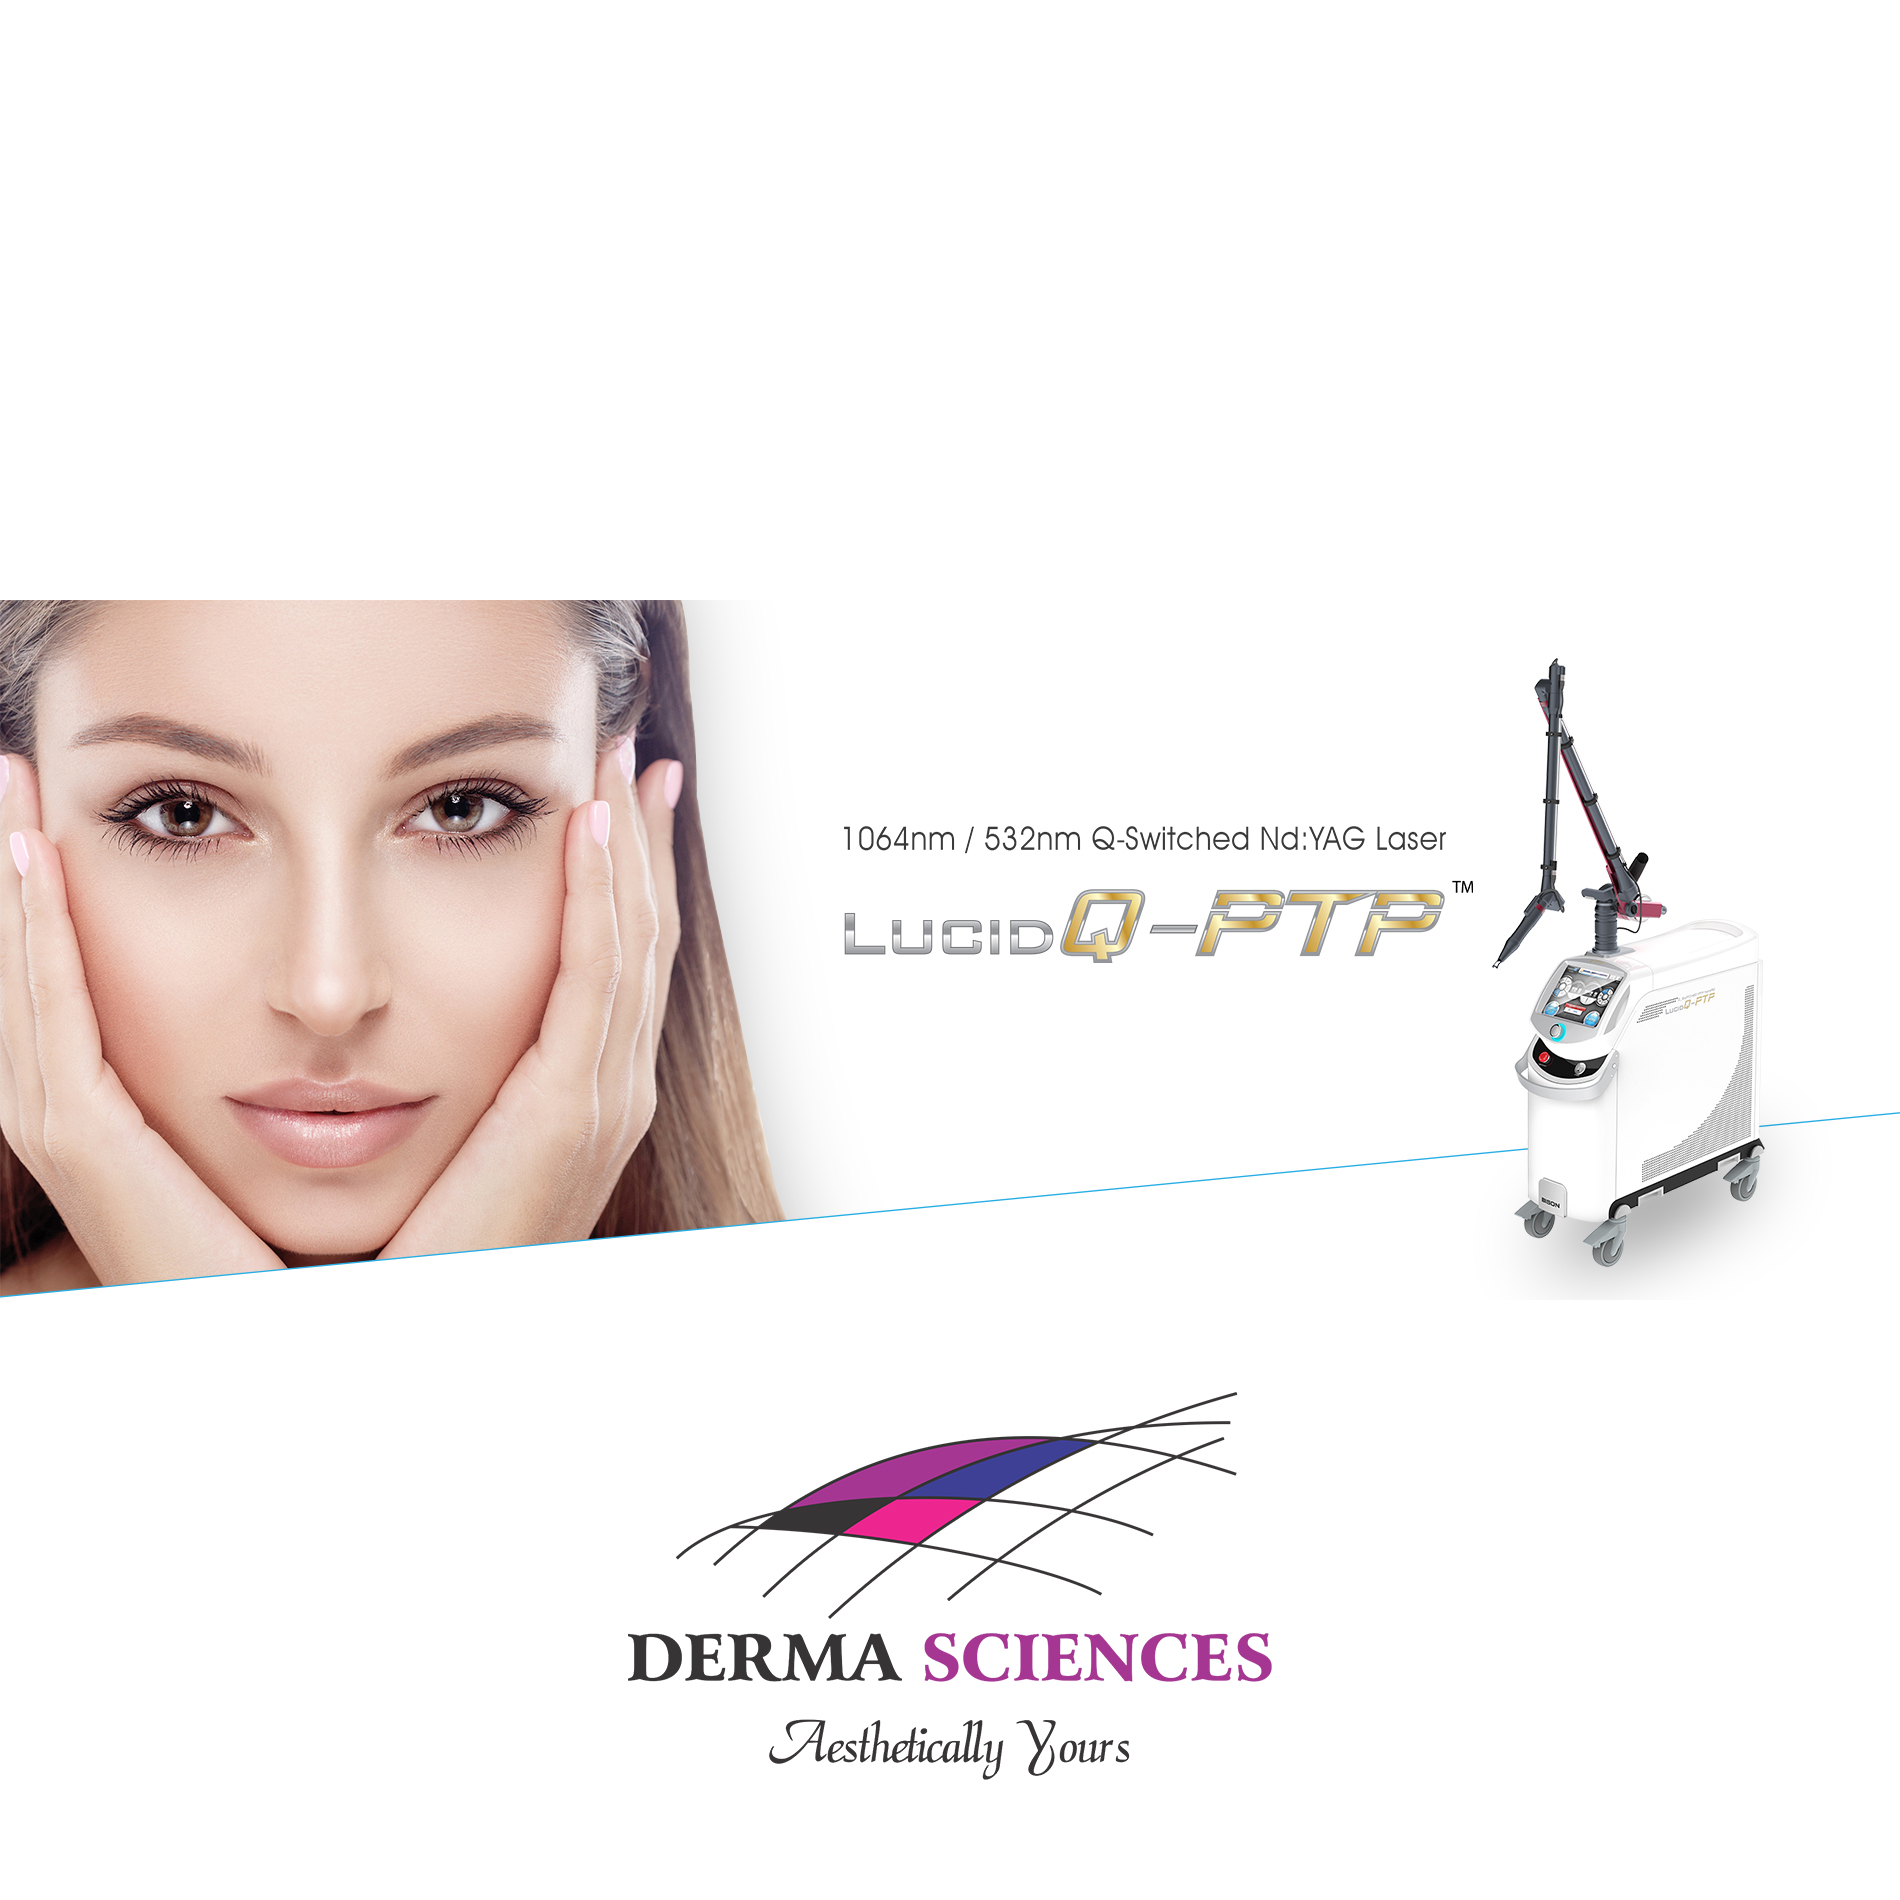 LUCID Q-PTP Dermatology – The Derma Sciences